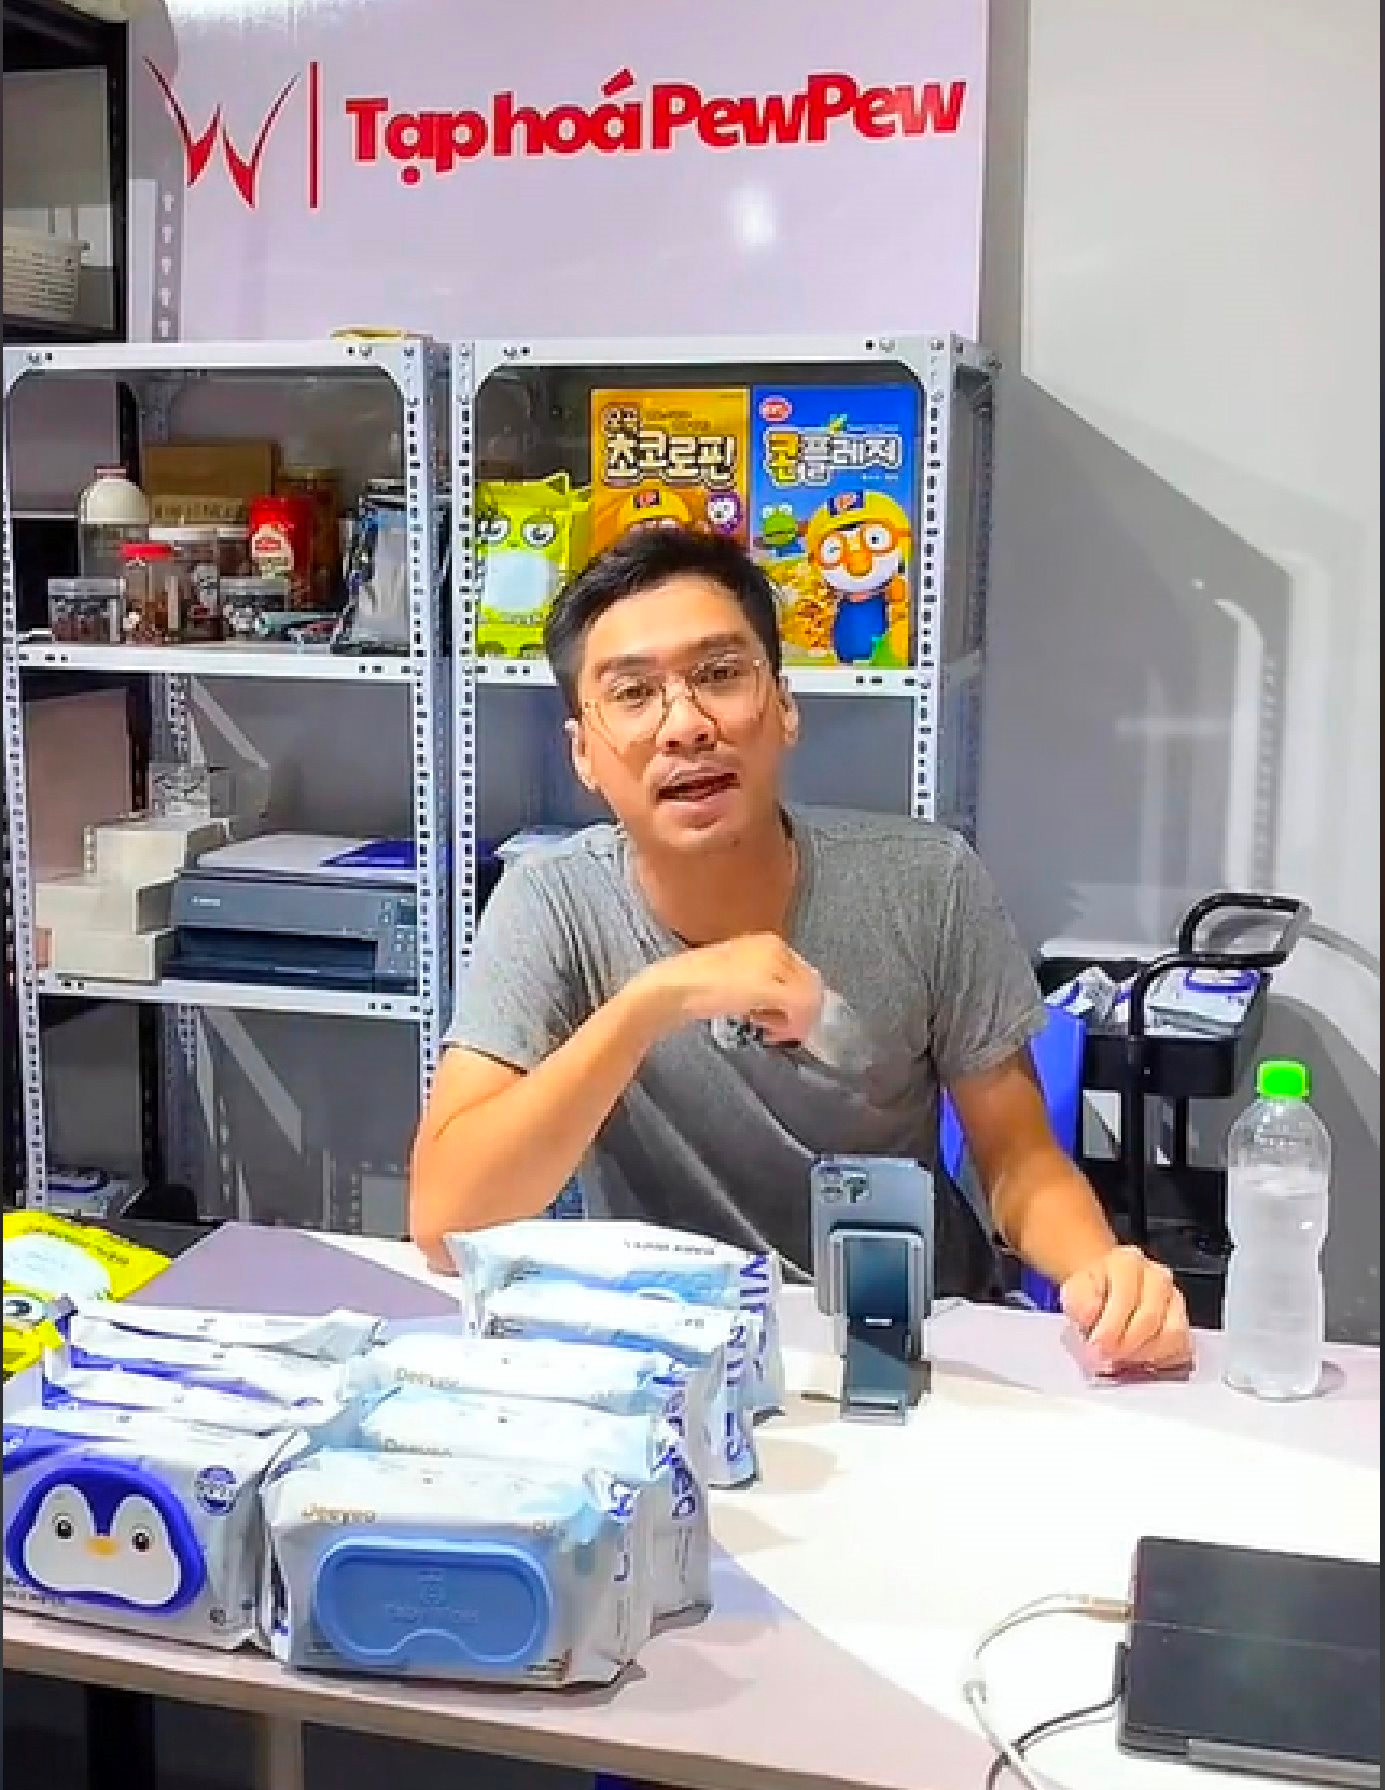 PewPew tiết lộ lý do khởi nghiệp siêu dị trên TikTok với giấy vệ sinh, livestream bằng kỷ vật tình yêu, và chuyện ‘chưa có nhãn hàng nào phải buồn’ - Ảnh 6.